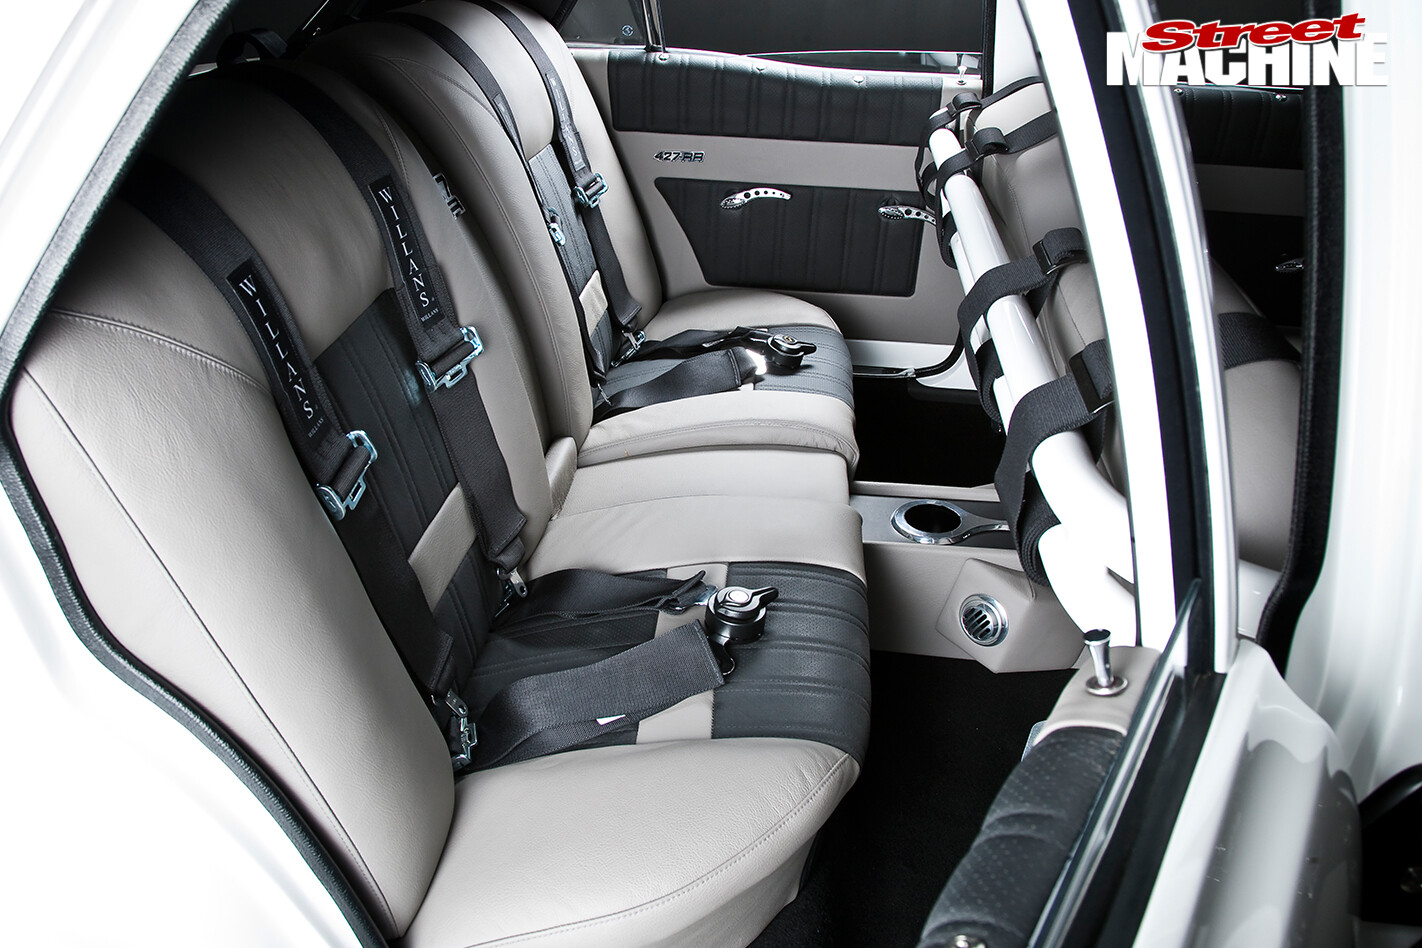 Ford -Falcon -XY-Elite -interior -rear